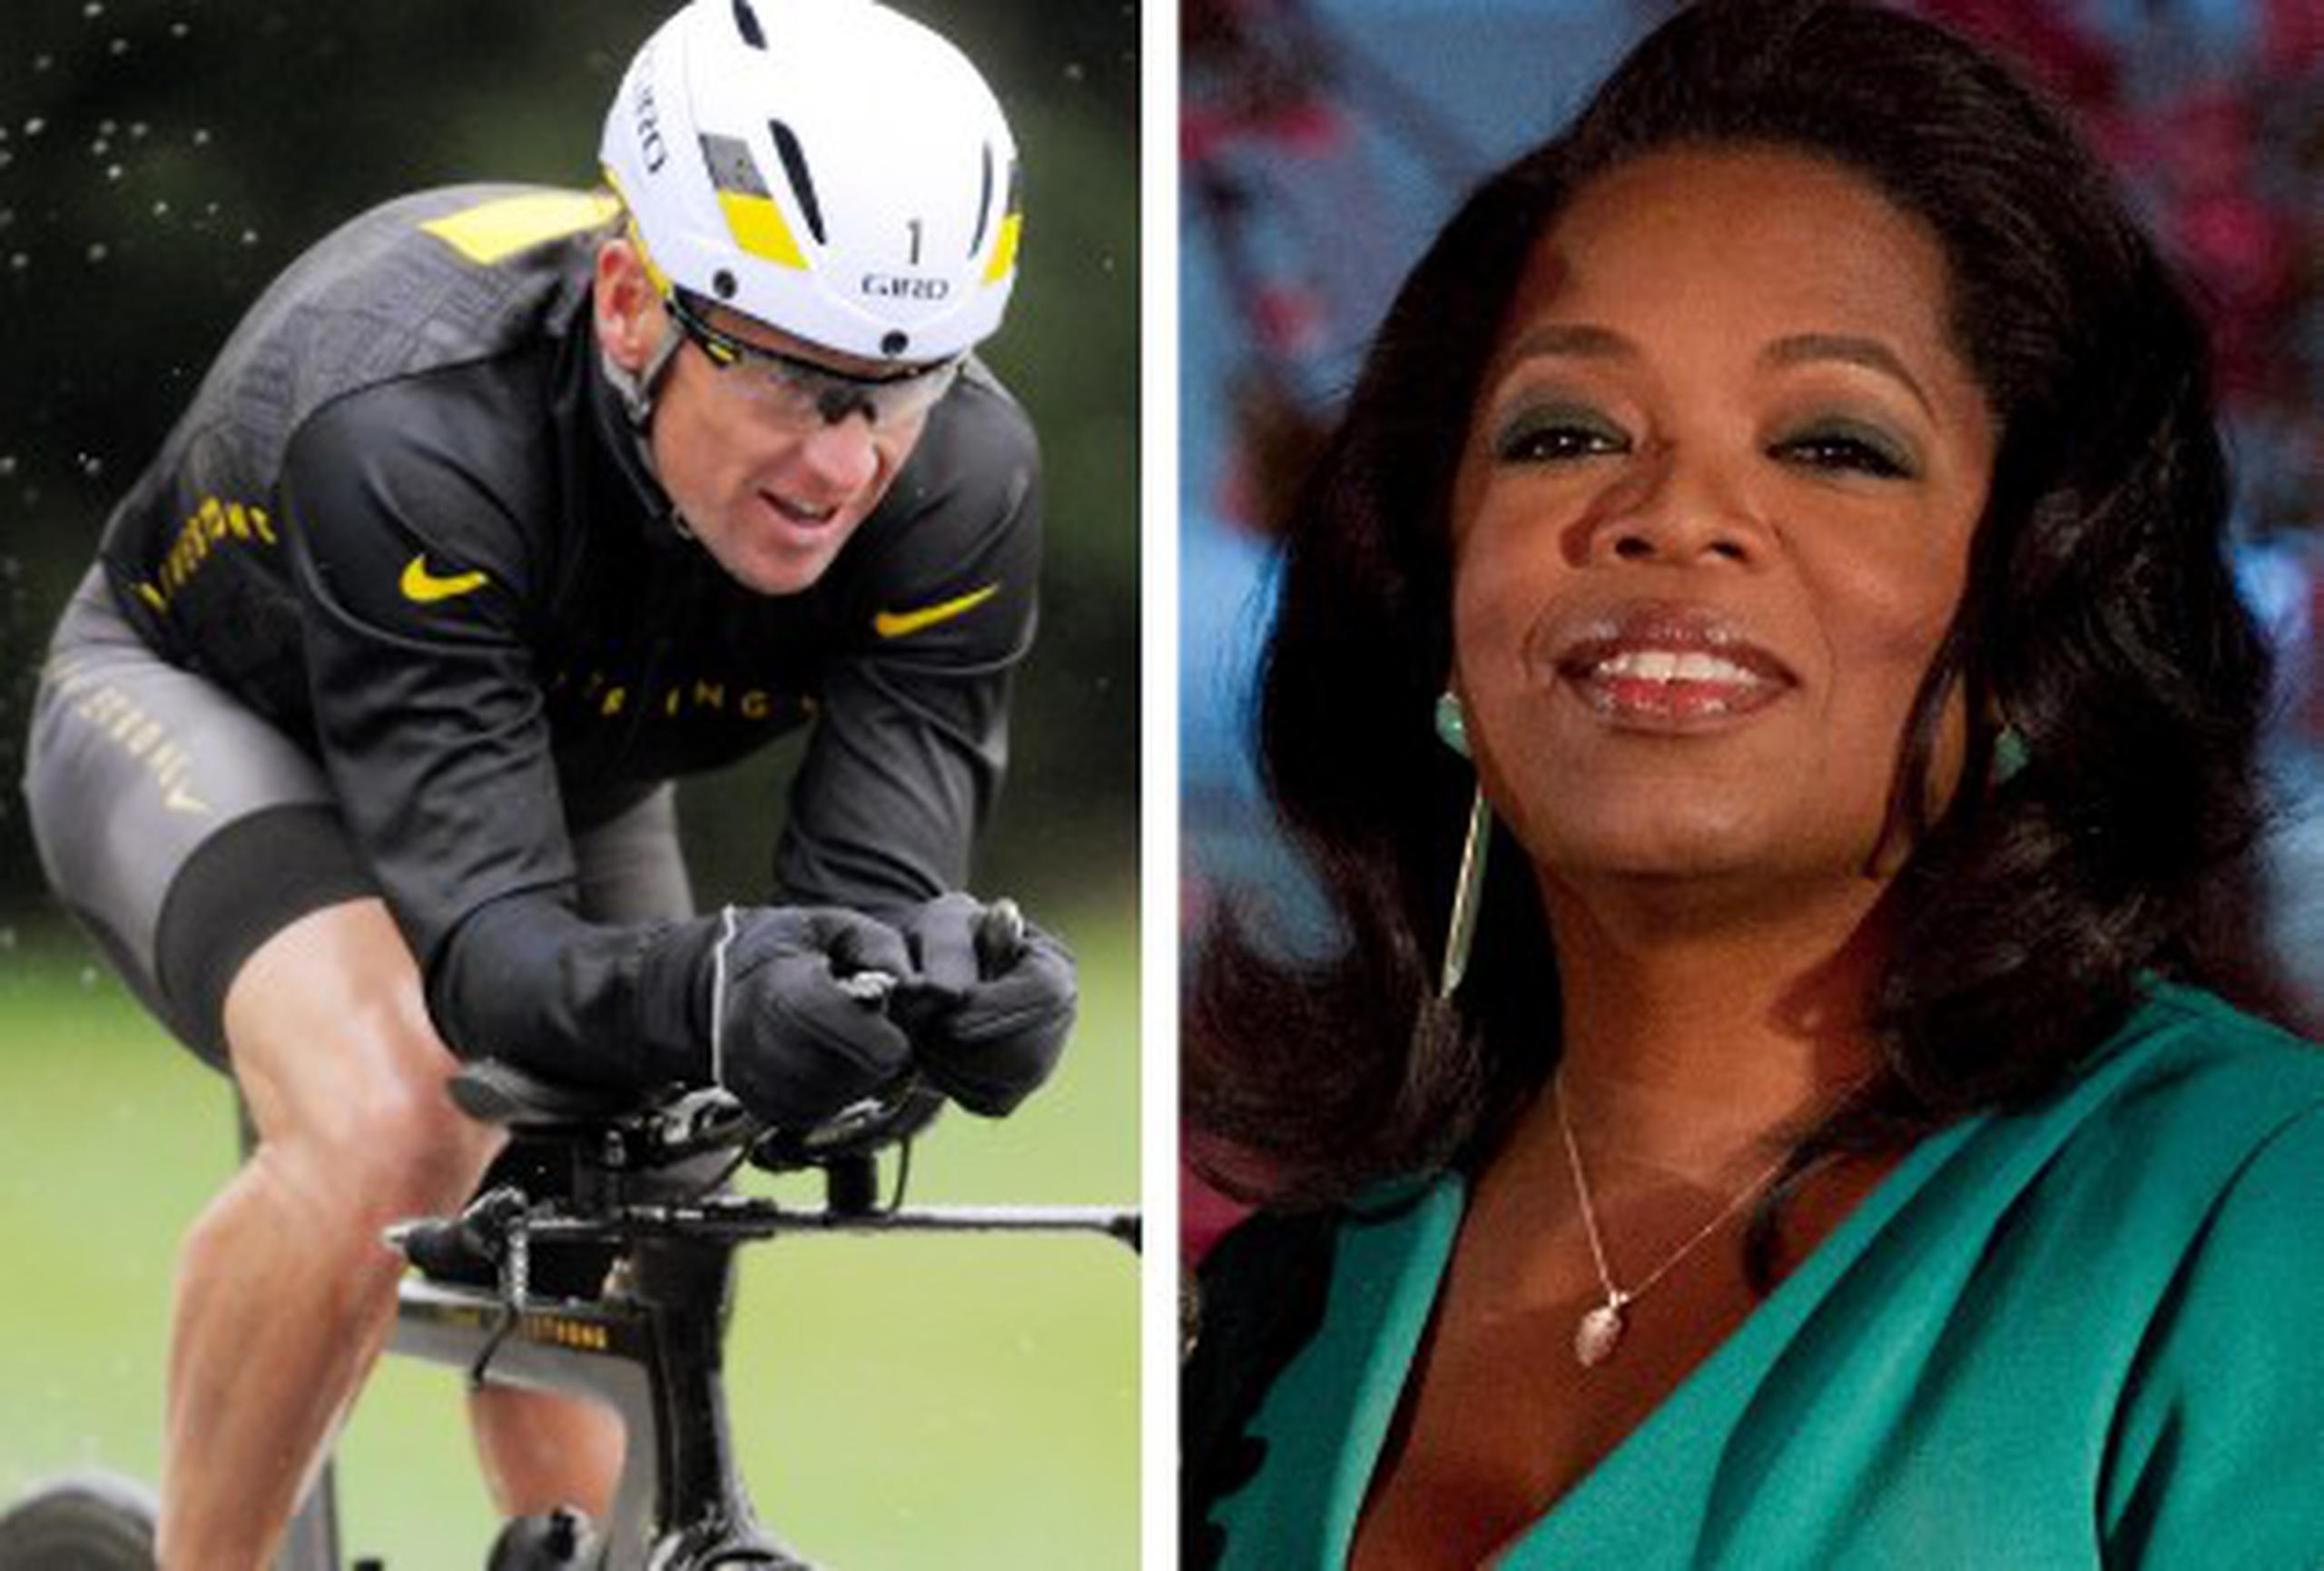 La entrevista con Oprah Winfrey será en la casa de Lance Armstrong y será su primera respuesta pública al reporte de la USADA. (Archivo)